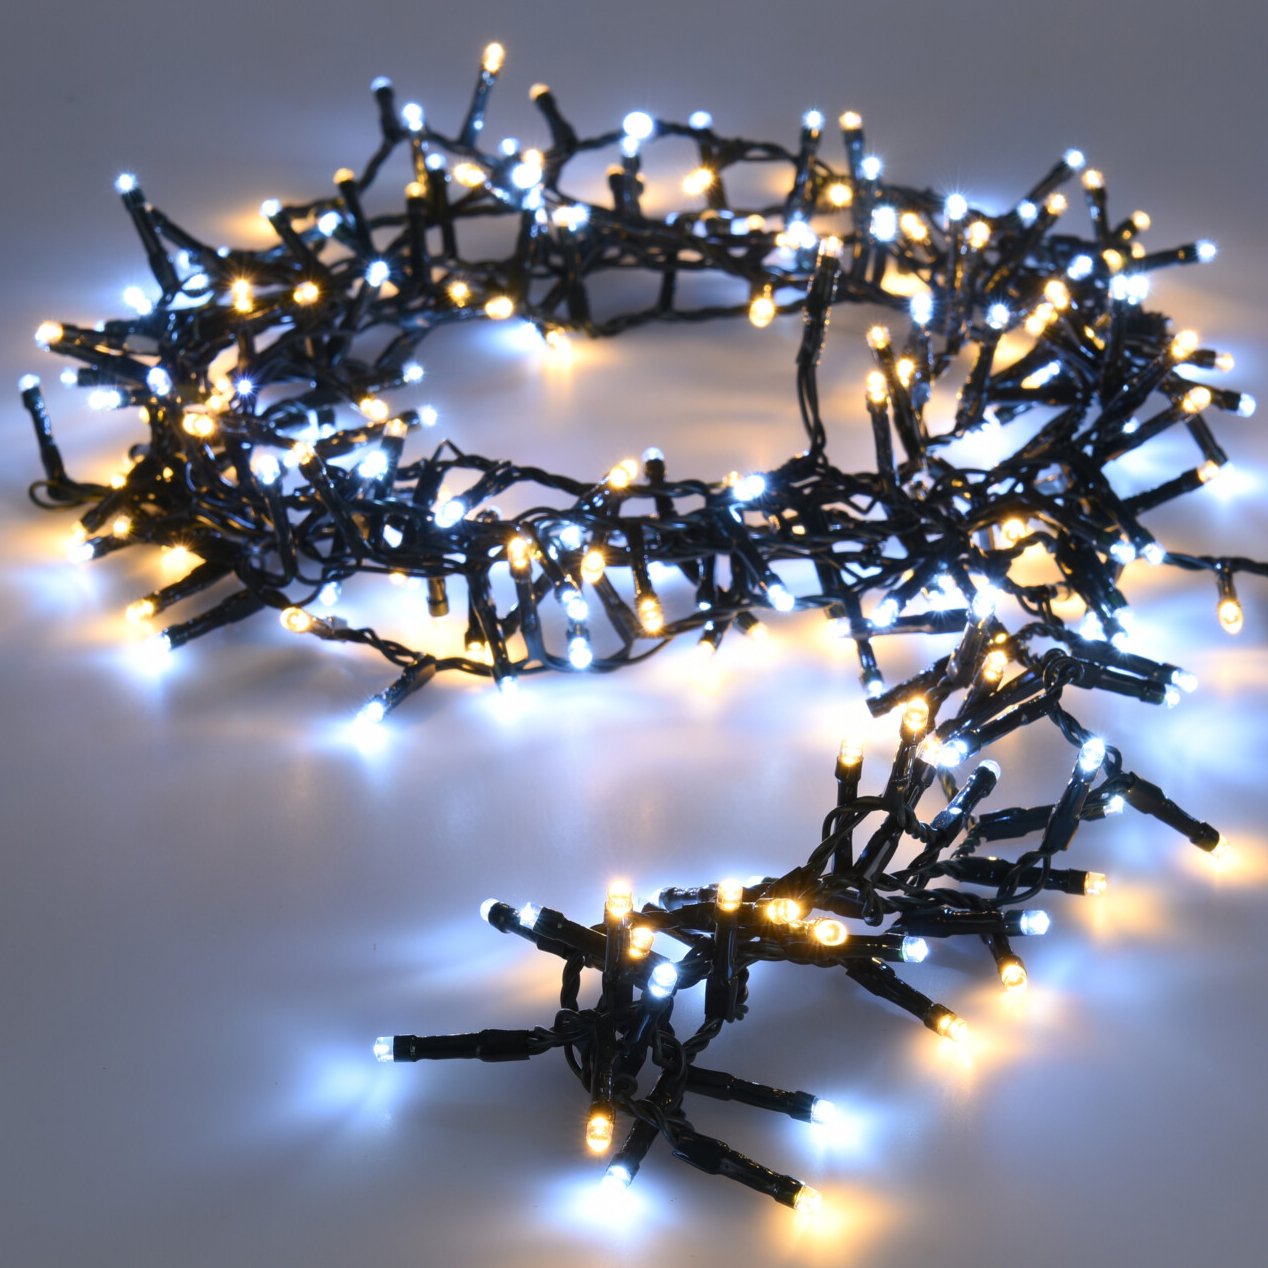 La guirlande lumineuse de Noël : Tout un art et une histoire 